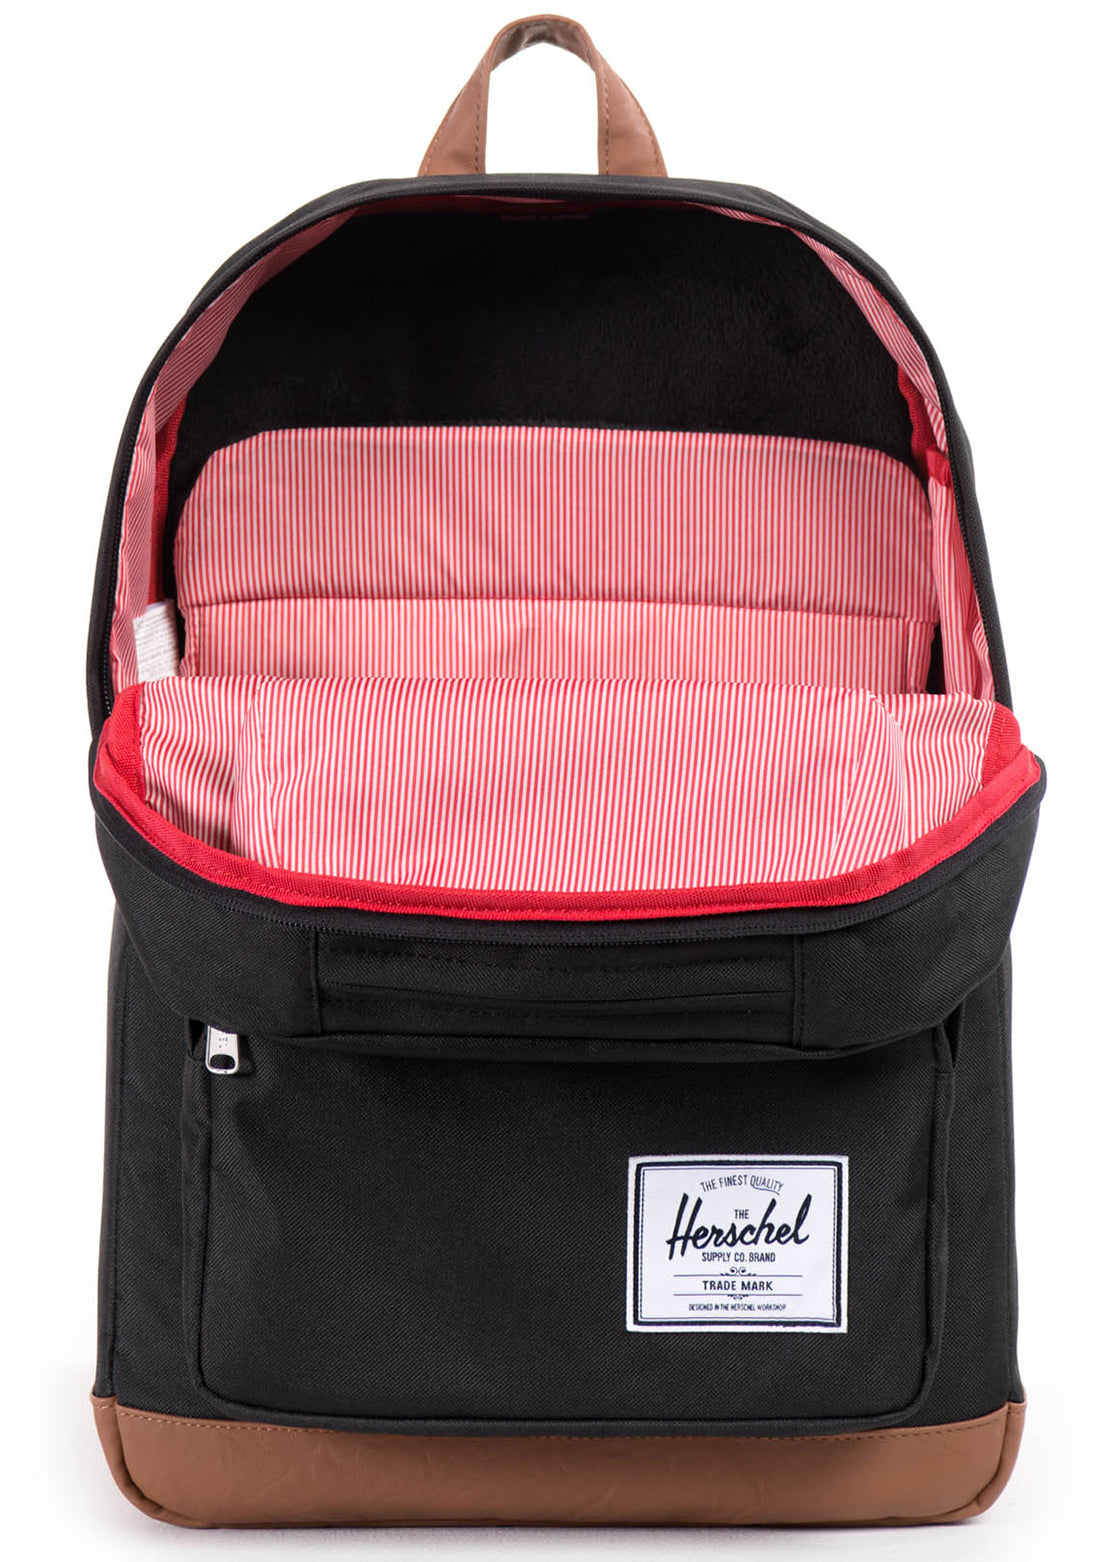 Herschel Pop Quiz Backpack Black/Tan Synthetic Leather